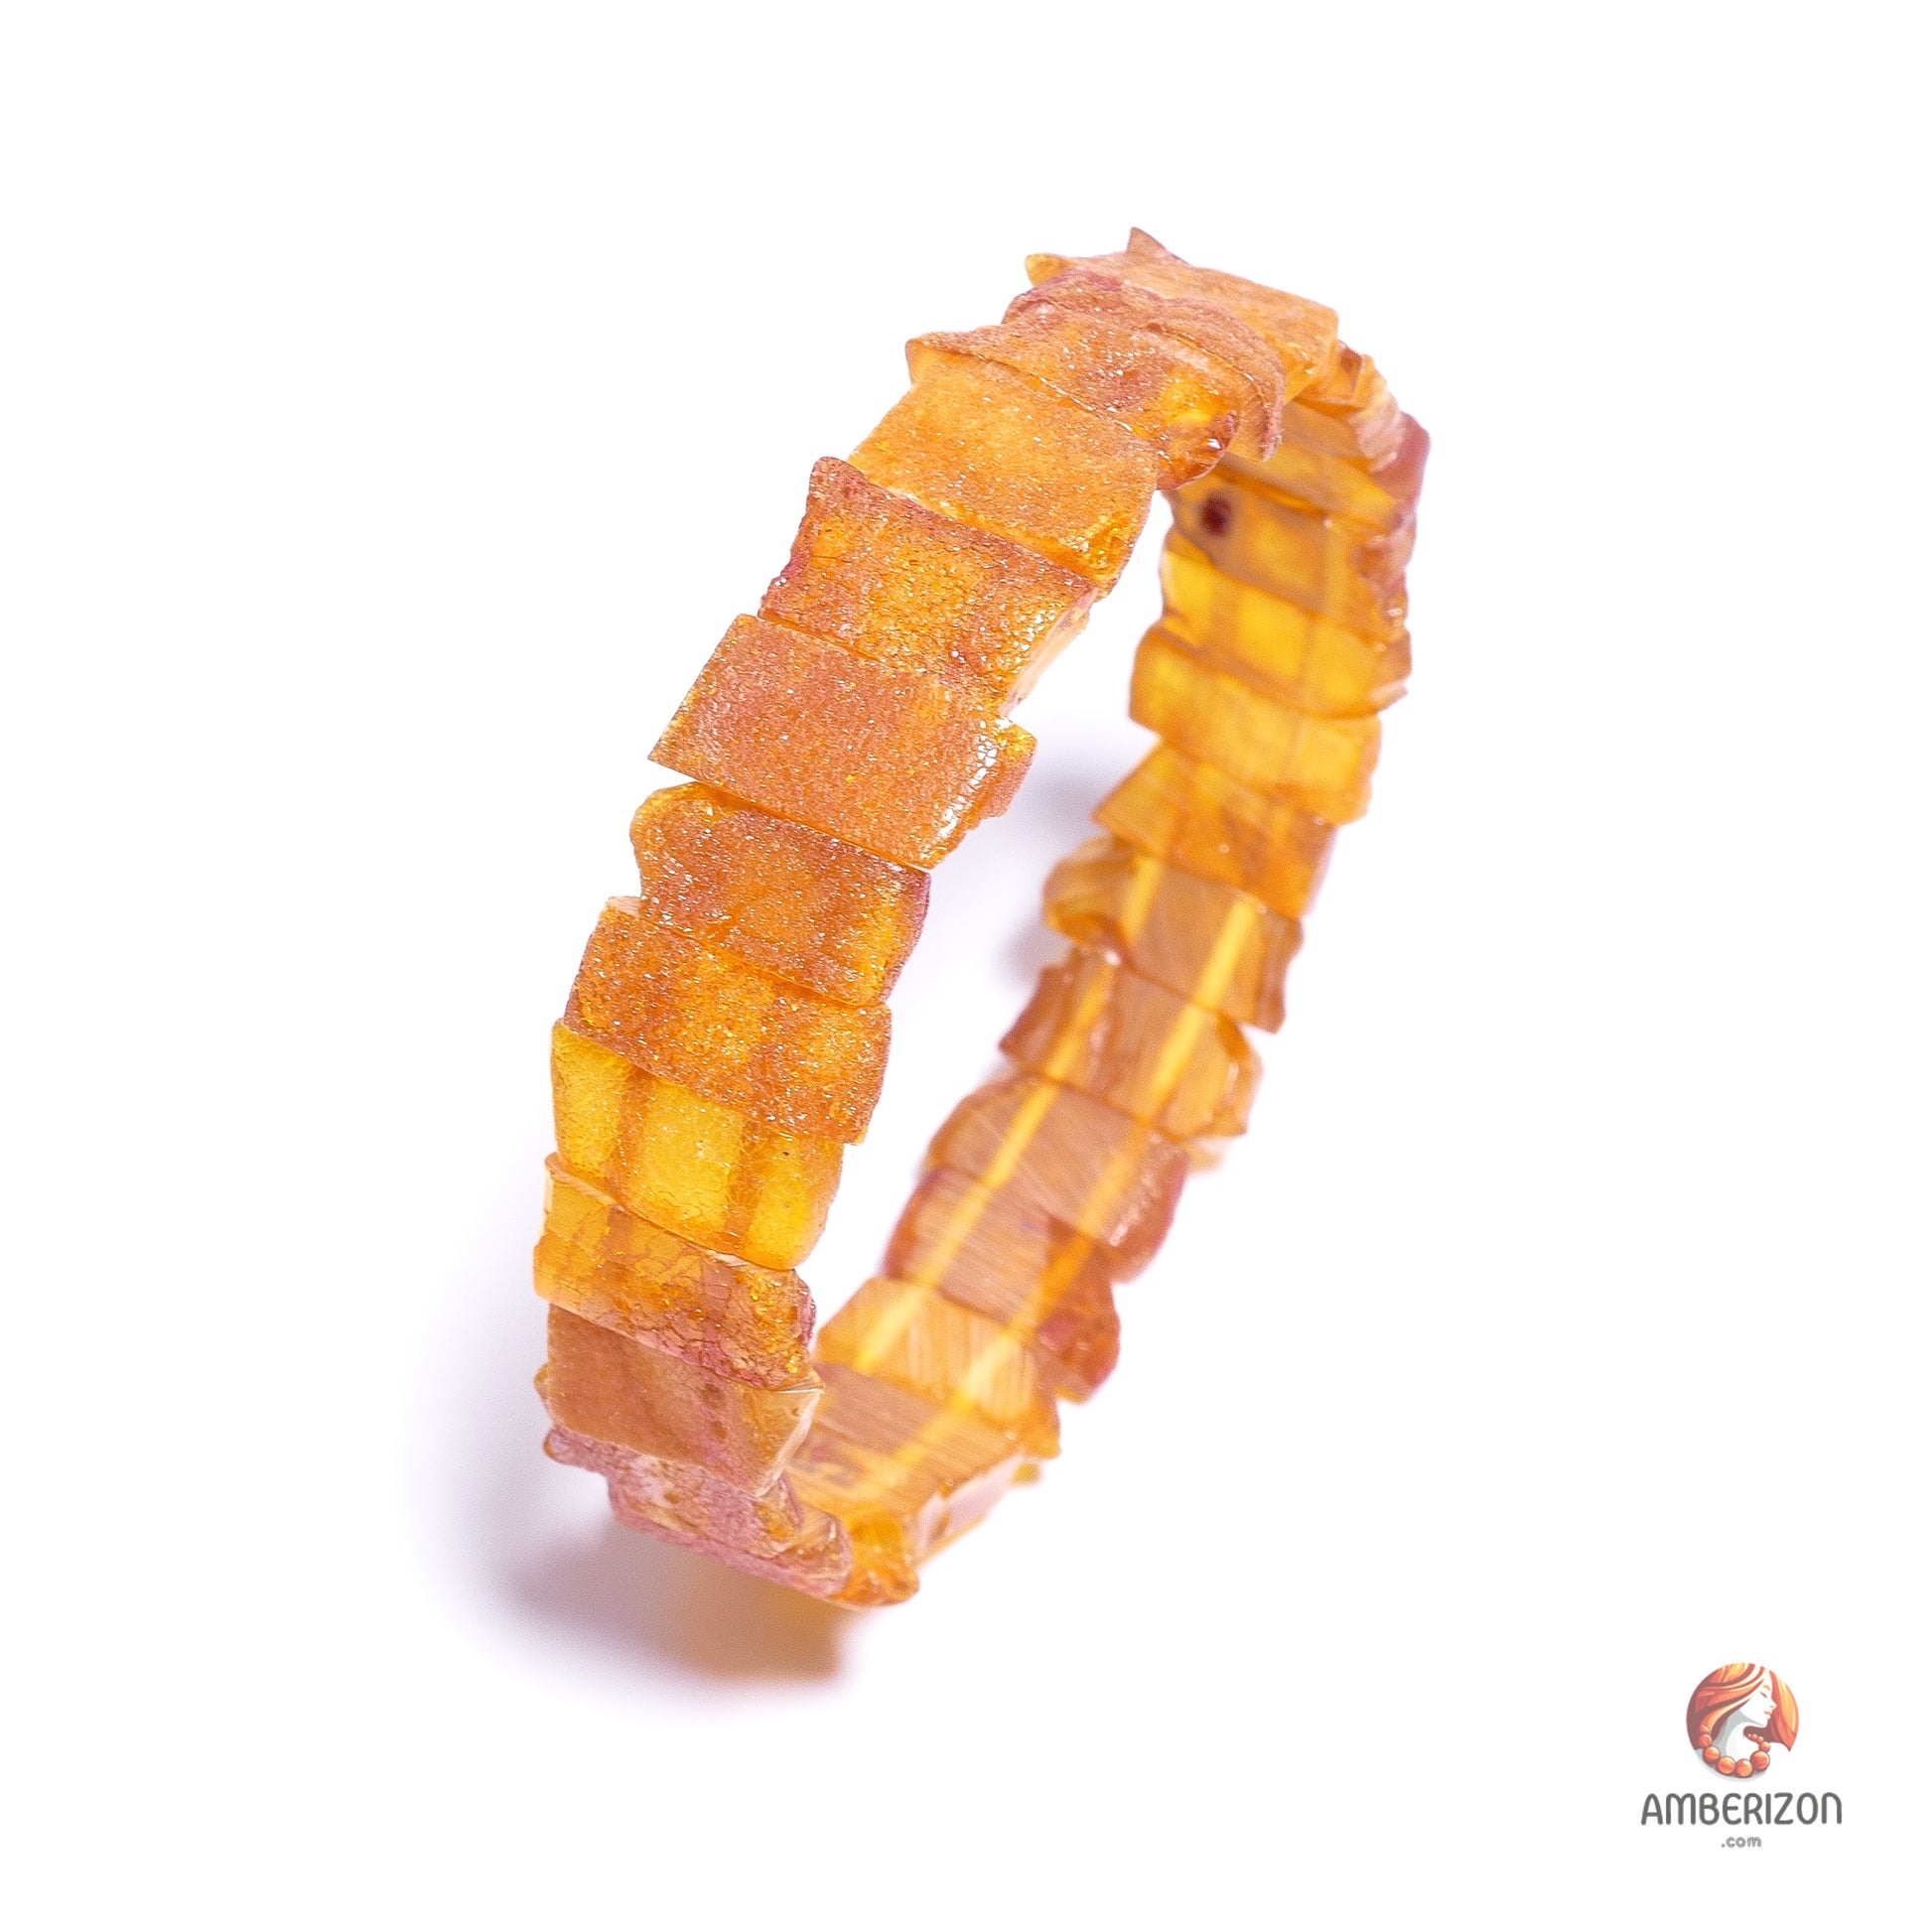 Unpolished raw sea amber stone bracelet - Grinded stone organic beads - Stretchy